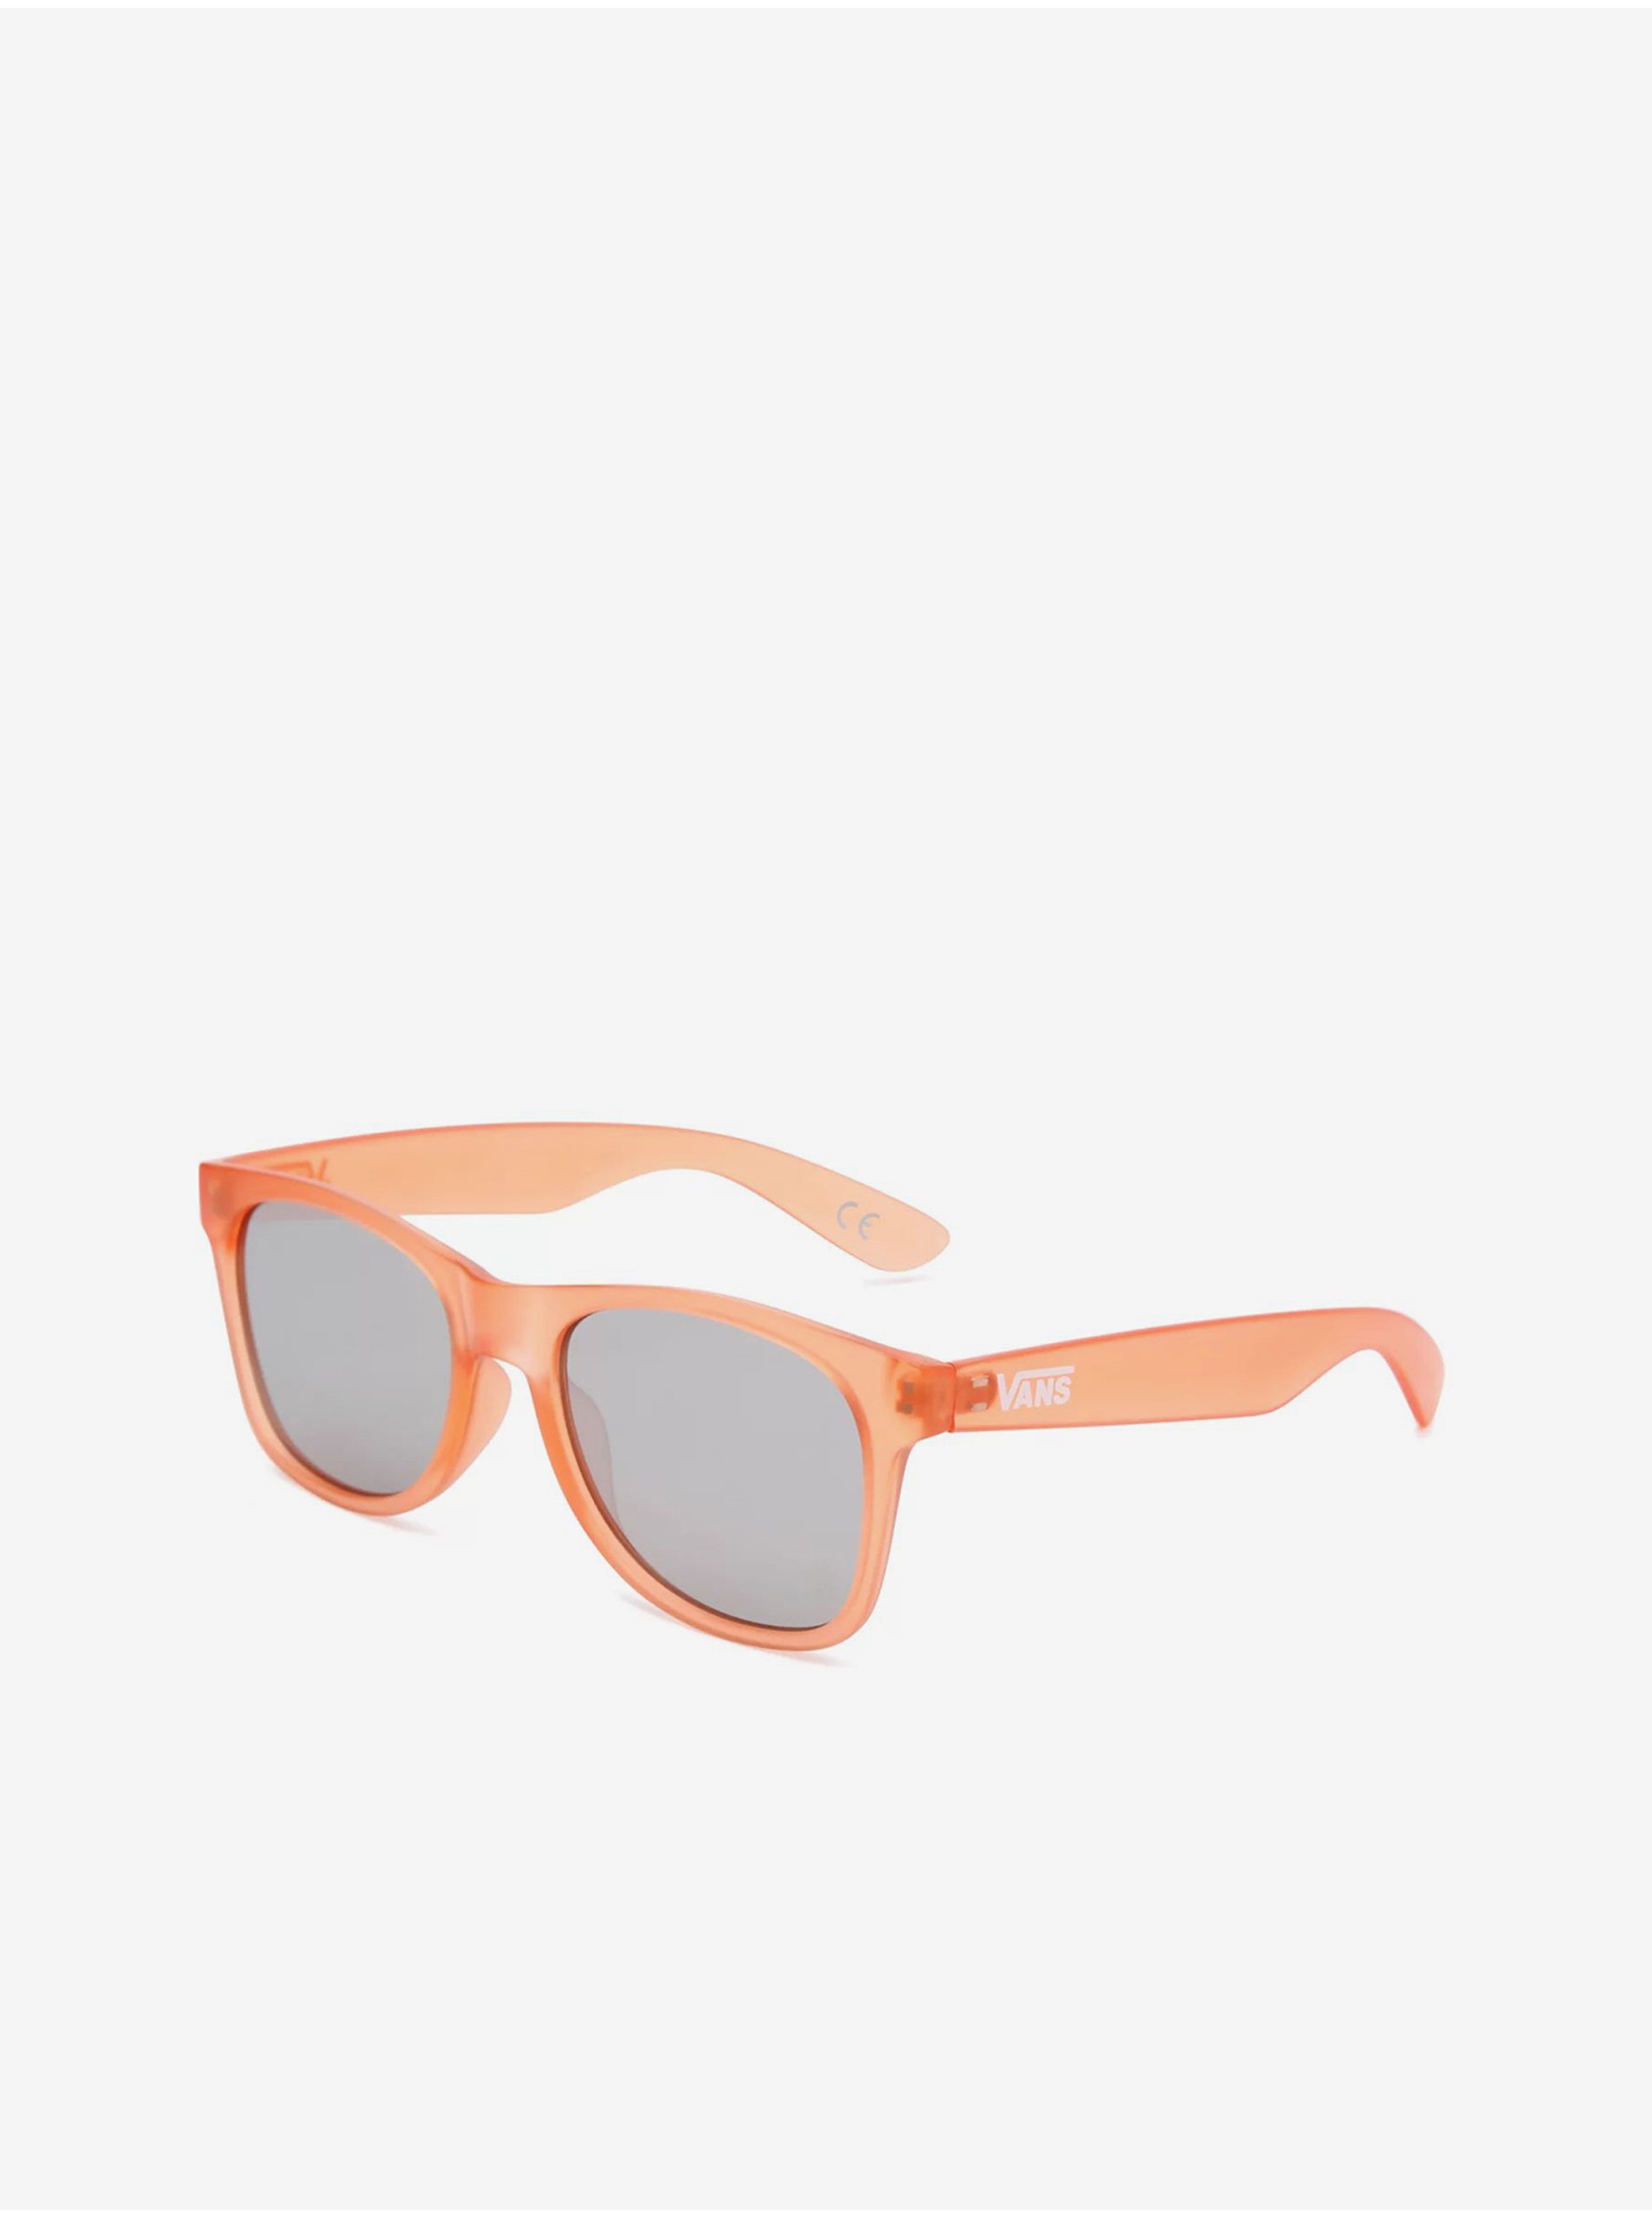 Lacno Oranžové pánske slnečné okuliare VANS